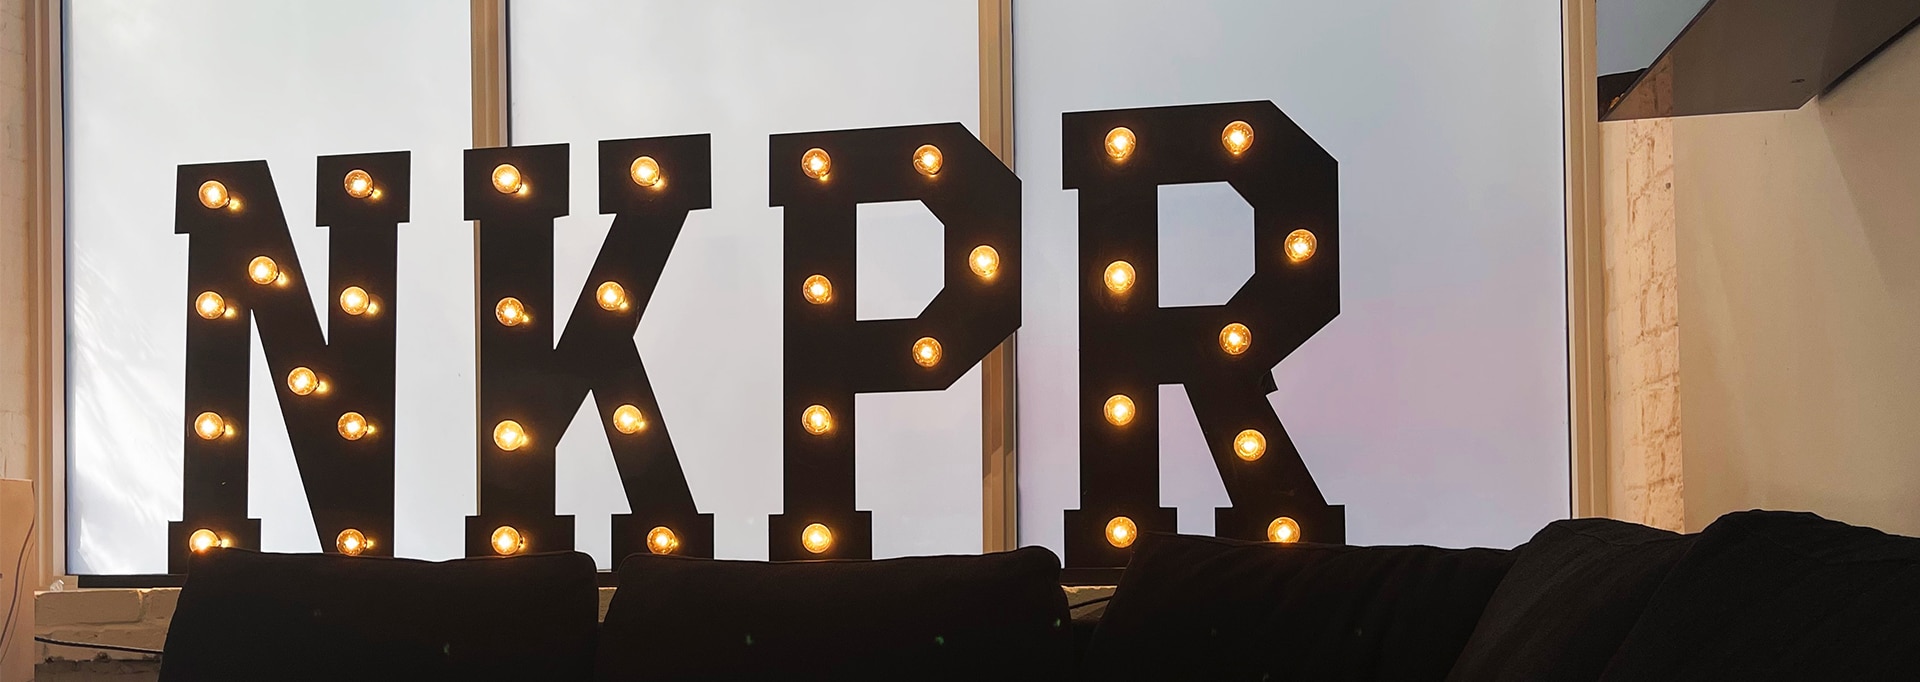 Light up NKPR logo sign on ledge.